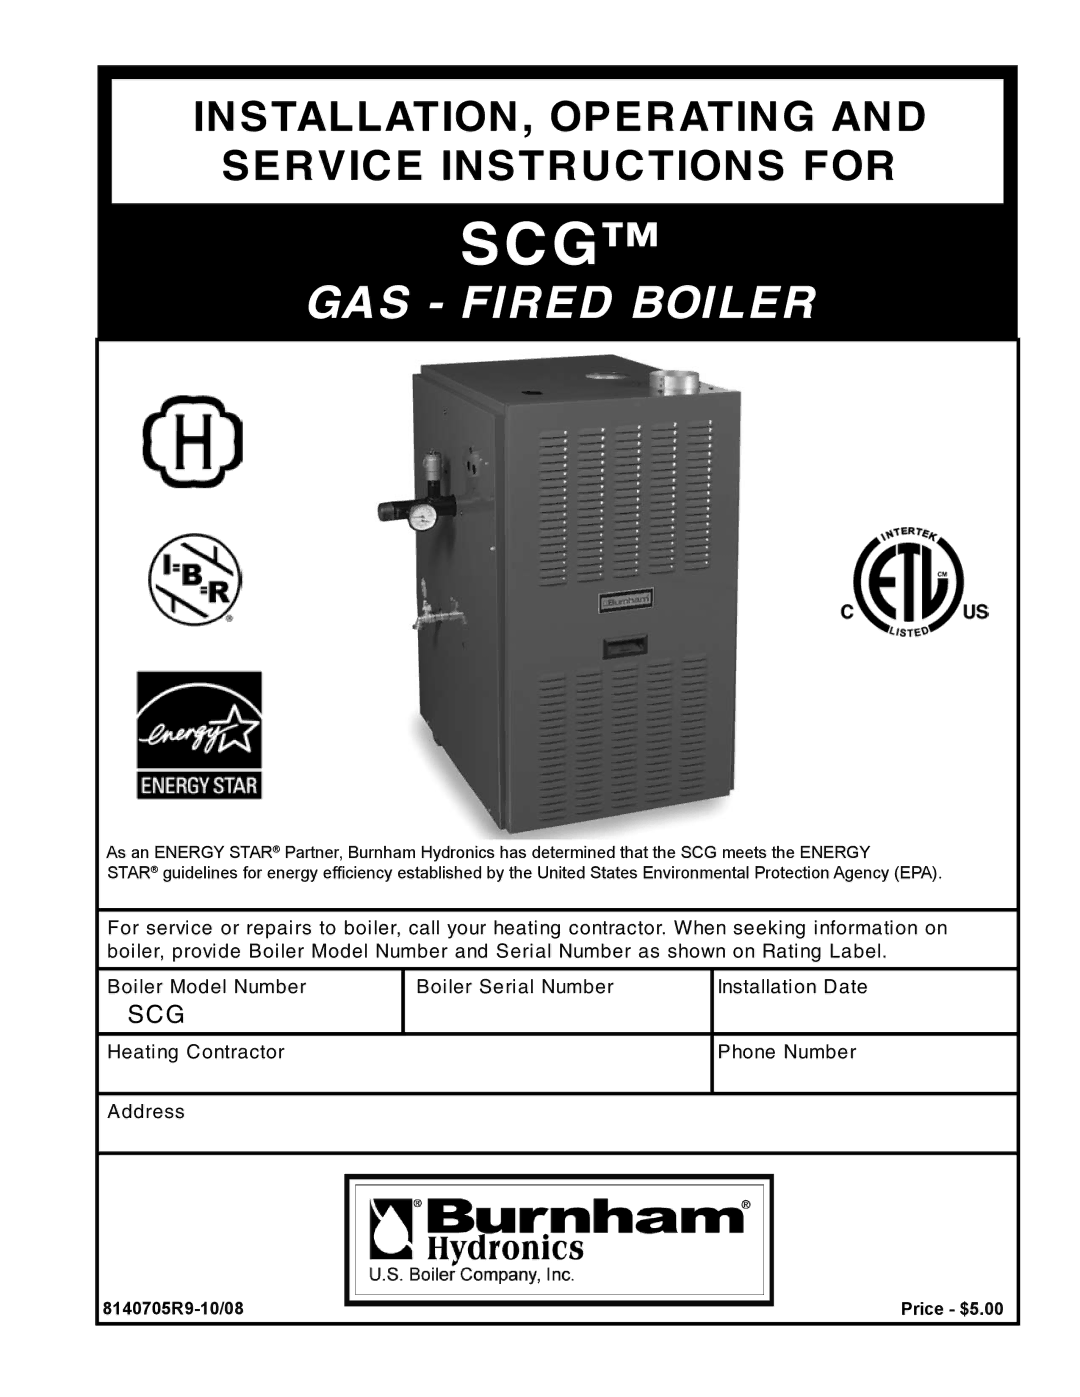 Burnham 1100-H4 manual Scg, 8140705R9-10/08 Price $5.00 